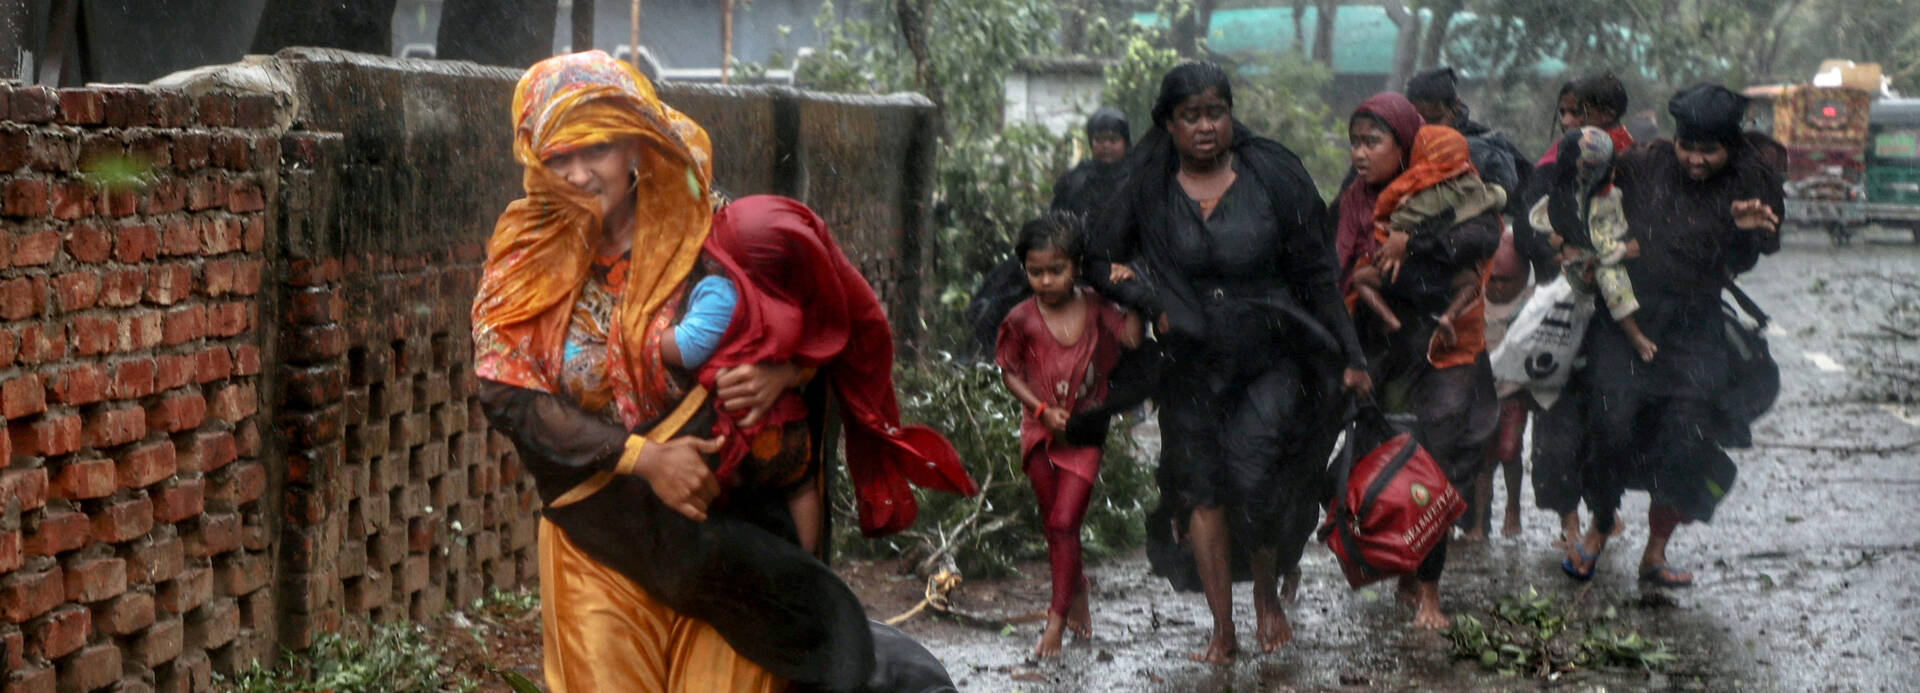 Frauen mit Kindern flüchten durch den Regen vor Zyklon Mocha in Bangladesch